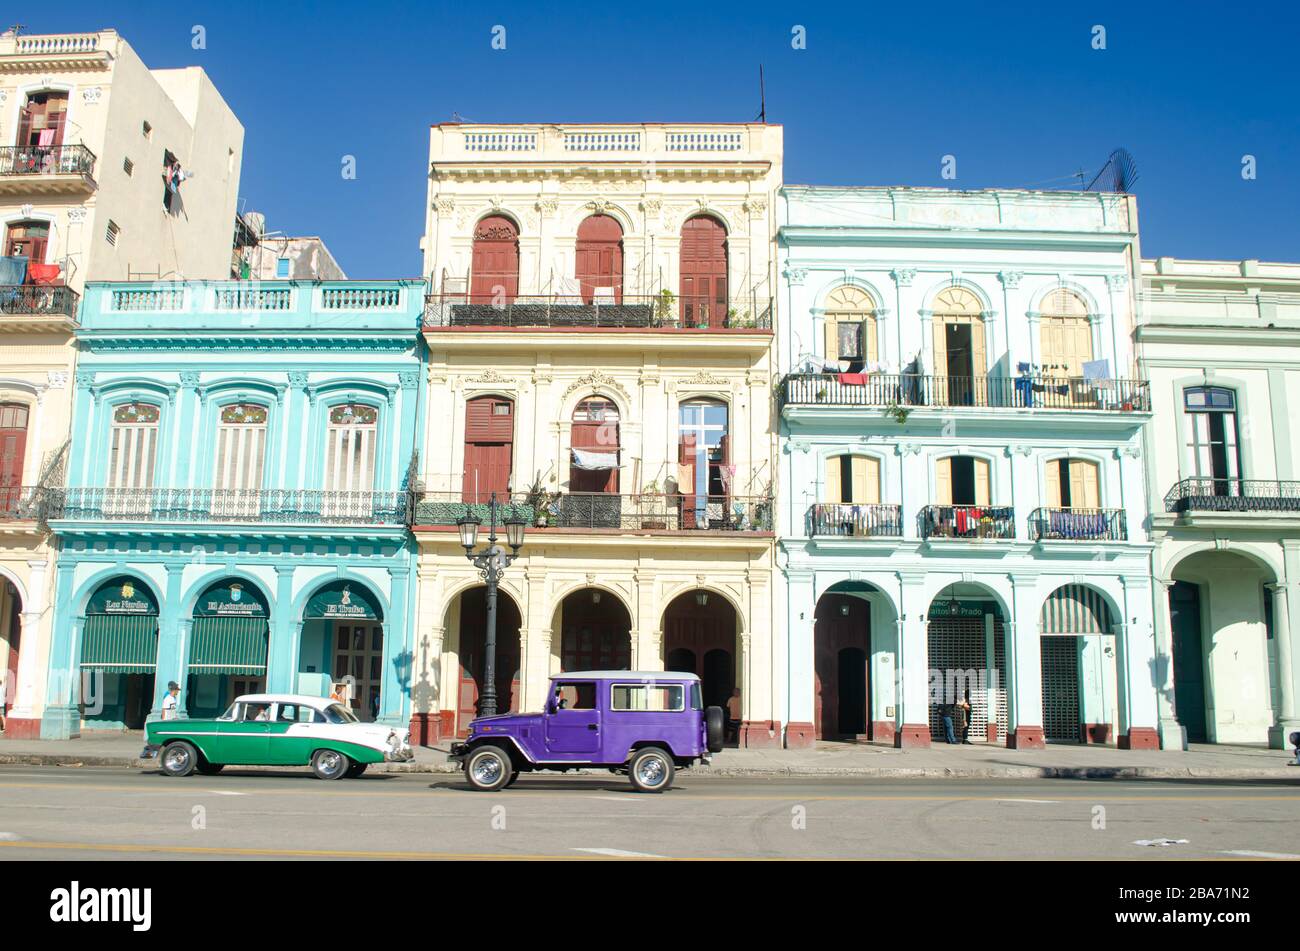 Eines der klassischsten Bilder des alten Havanna auf Kuba. Die alten Gebäude und Autos sorgen dafür, dass sich die Menschen wieder in der Zeit fühlen Stockfoto